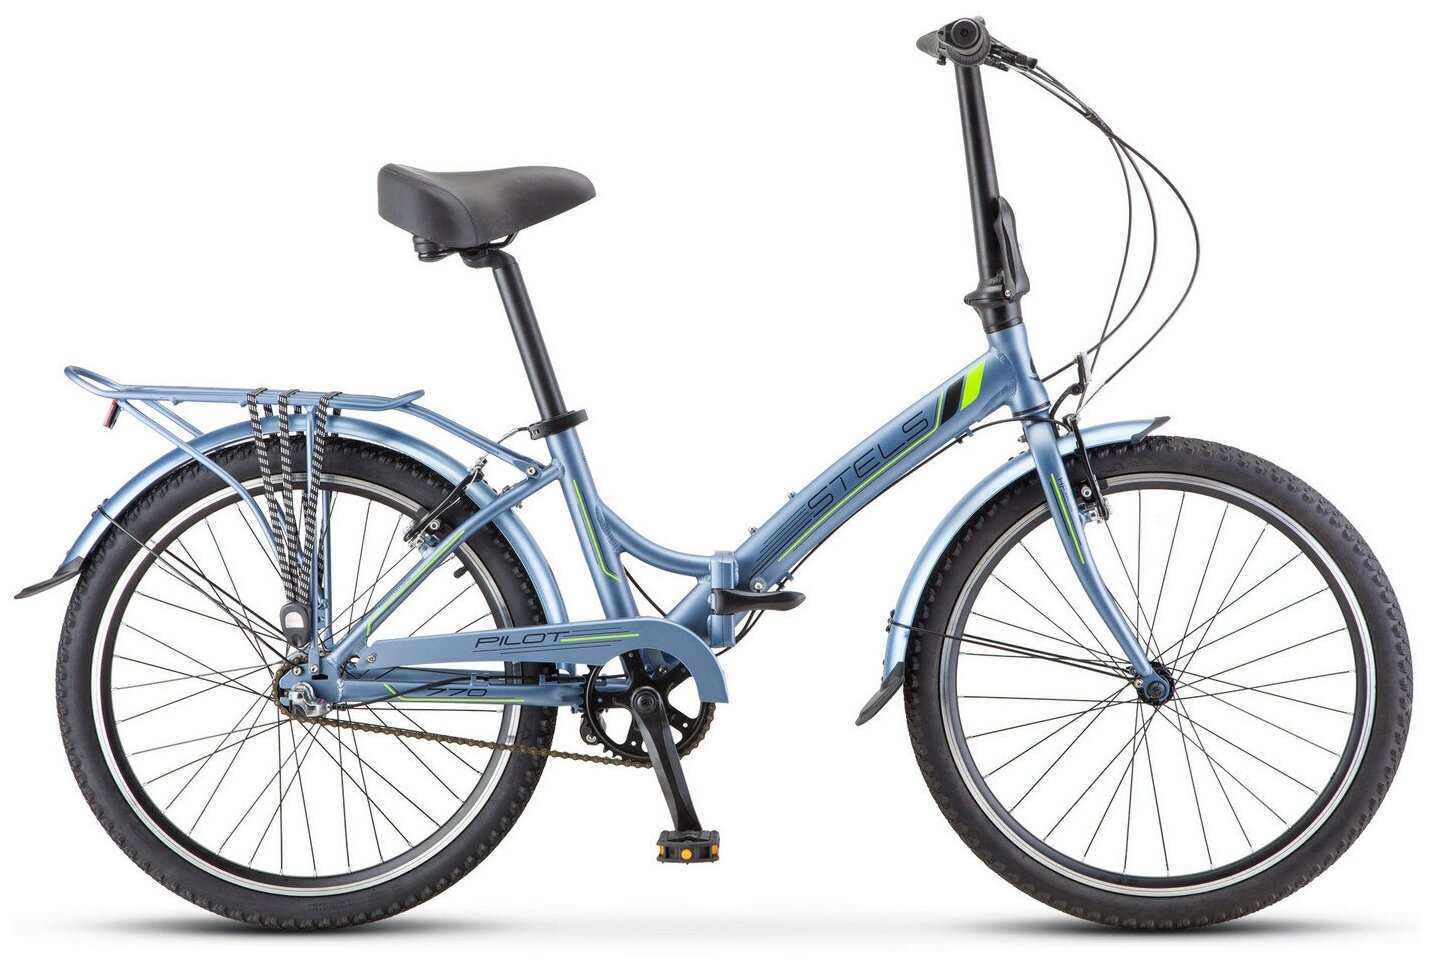 Городской велосипед STELS Pilot 770 24 V010 (2019) серый/зеленый 14" (требует финальной сборки)